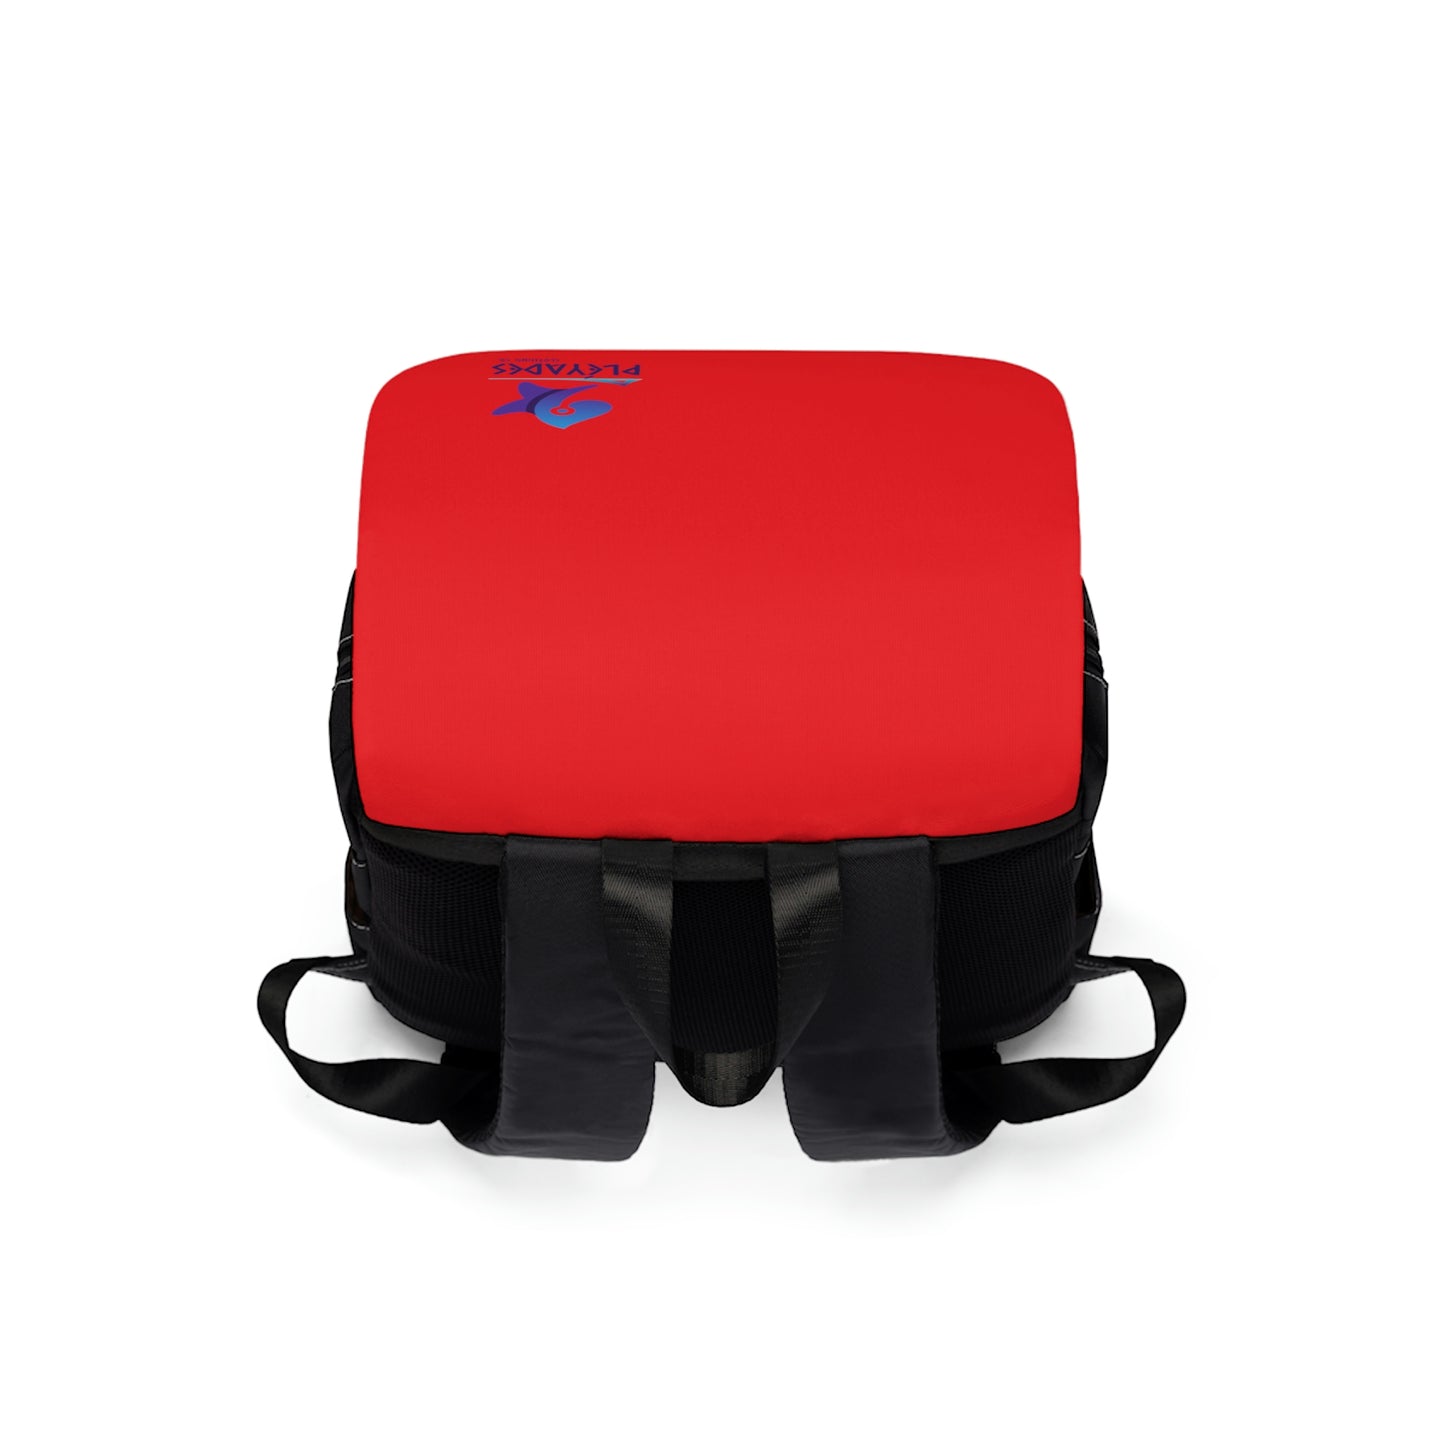 Red/Blk Unisex Casual Shoulder Backpack